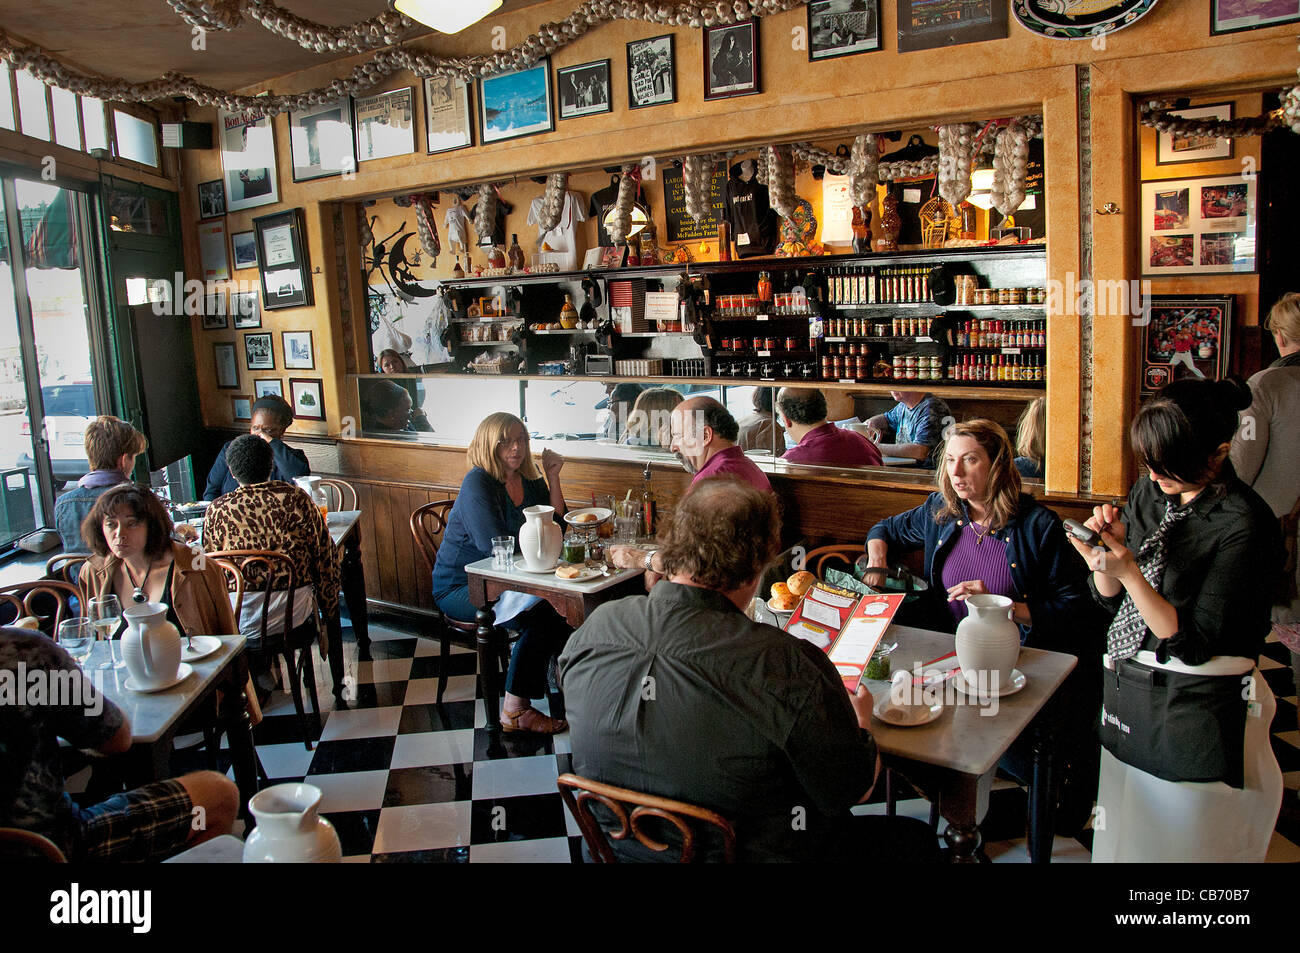 Die stinkende rose Knoblauch Restaurant Bar wenig Italien North Beach San Francisco Kalifornien Vereinigte Staaten Stockfoto